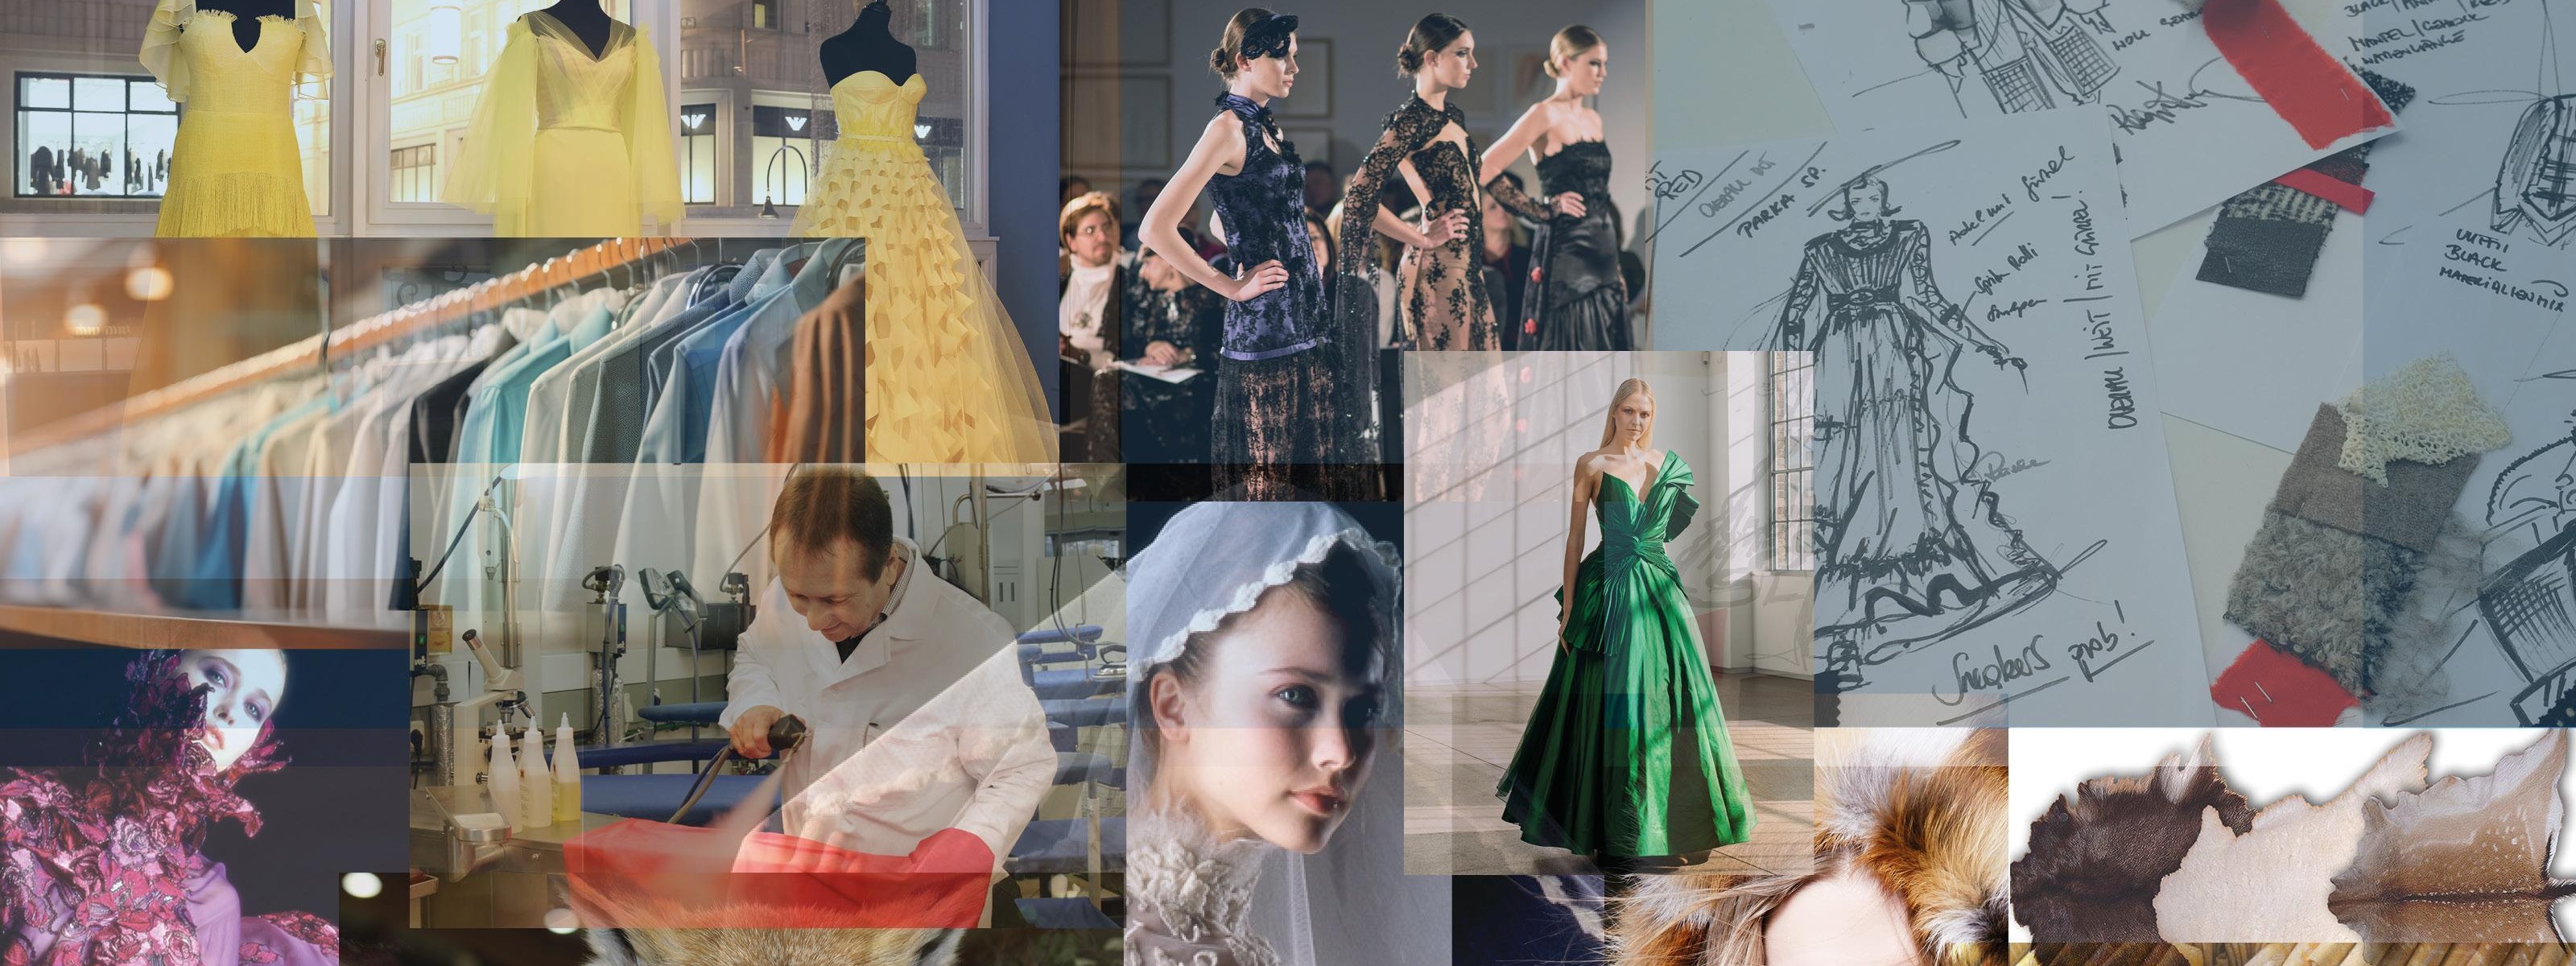 Collage aus verschiedenen Bildern zum Thema Mode- und Bekleidungstechnik mit Kleidungsstücken, Modellen in Haute Couture Kleidern, Illustrationen, Stoffmuster, Felle, präparierten Füchsen, einer Person, die ein Kleidungsstück reinigt